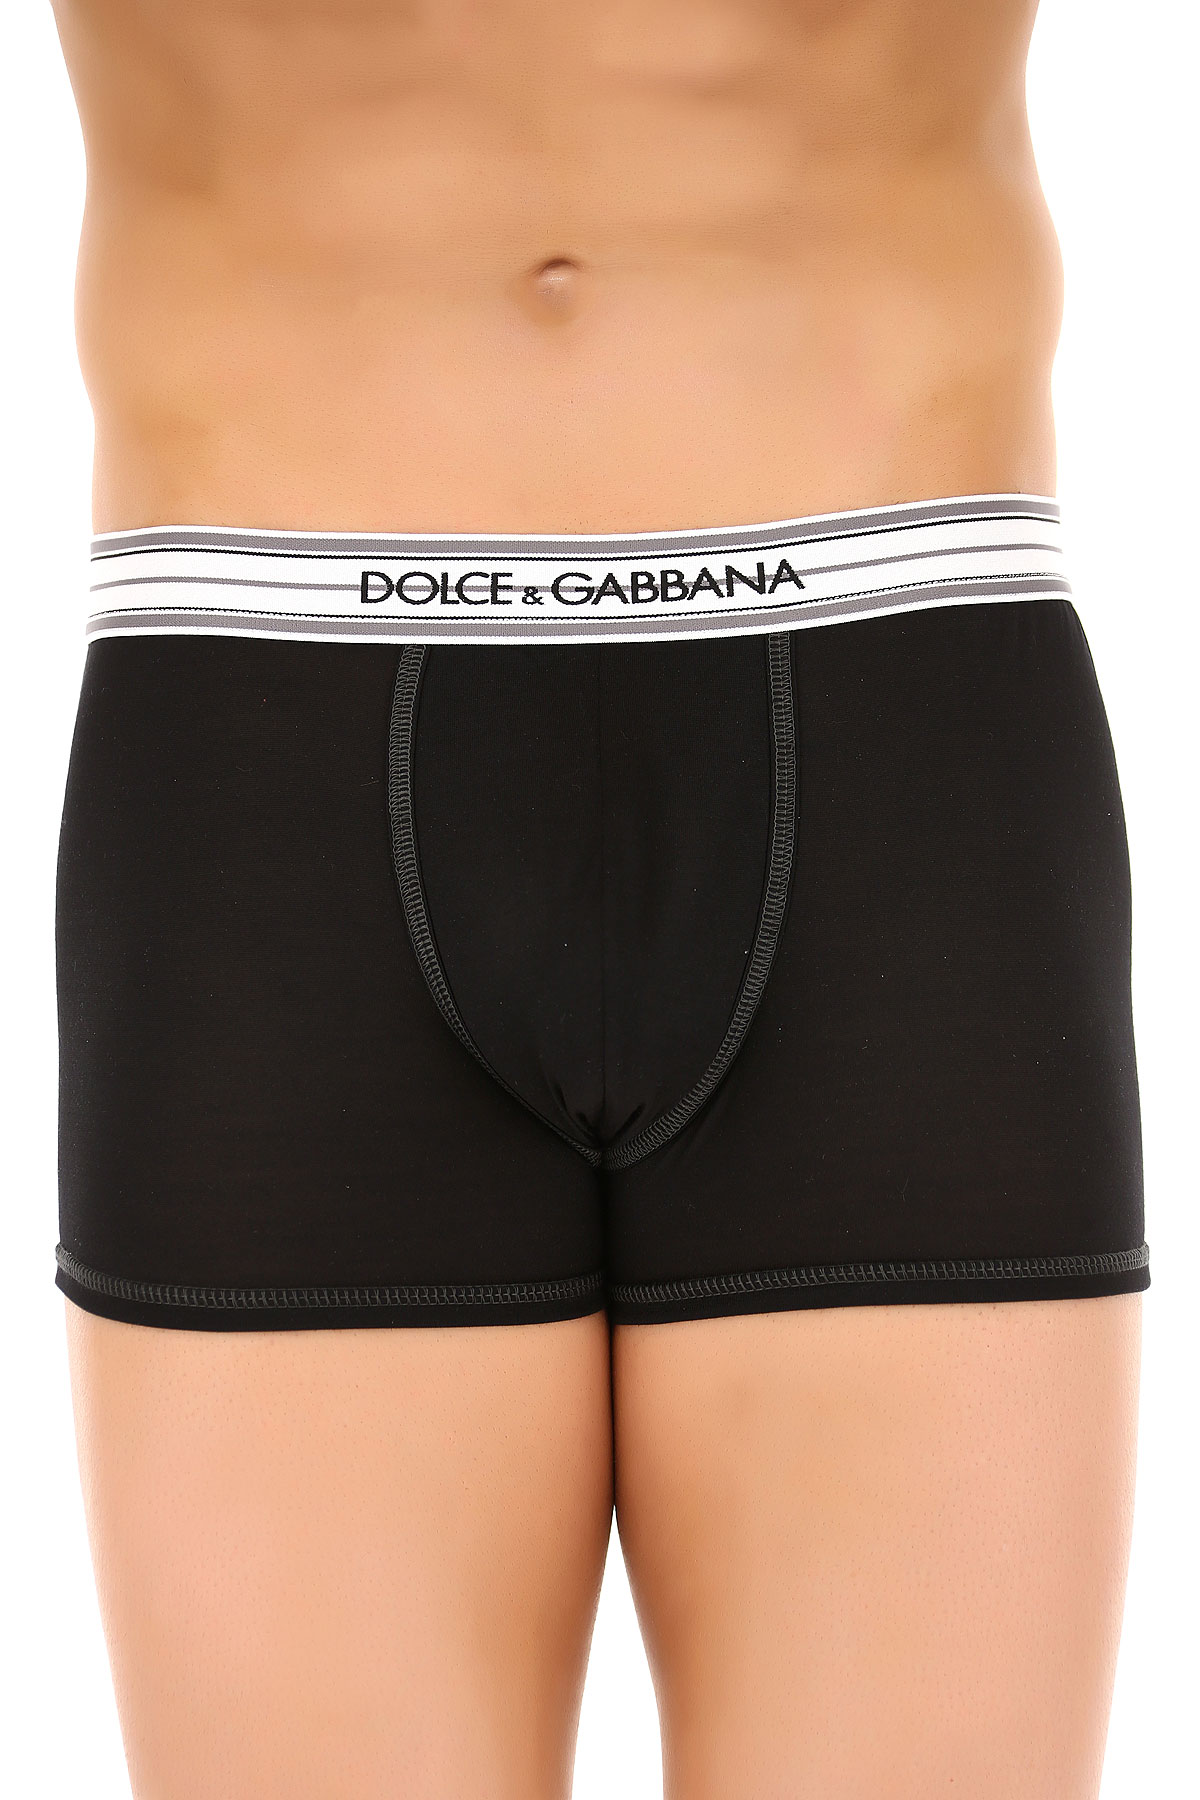 Dolce & Gabbana Caleçon Boxer Homme, Boxer, Noir, Soie, 2017, L M S XL